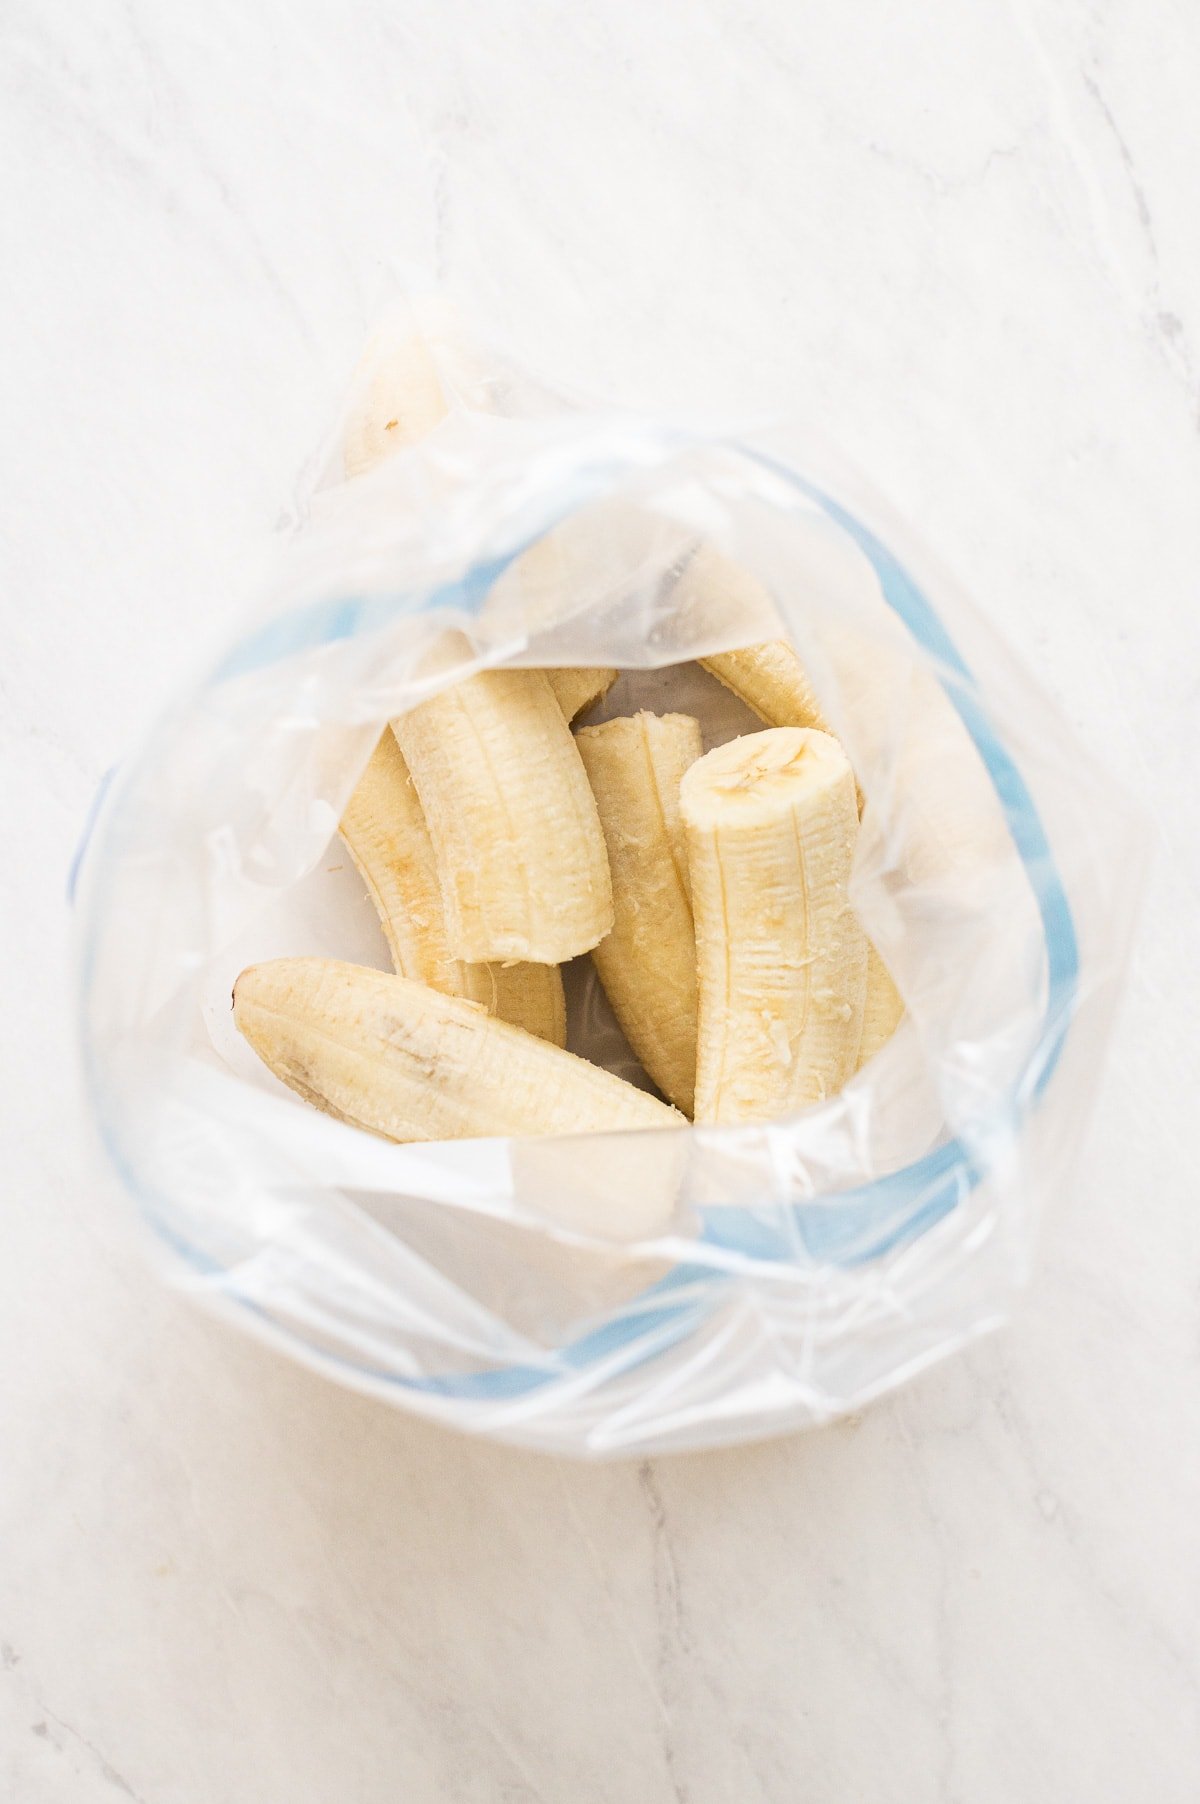 Frozen banana halves in a Ziploc bag.